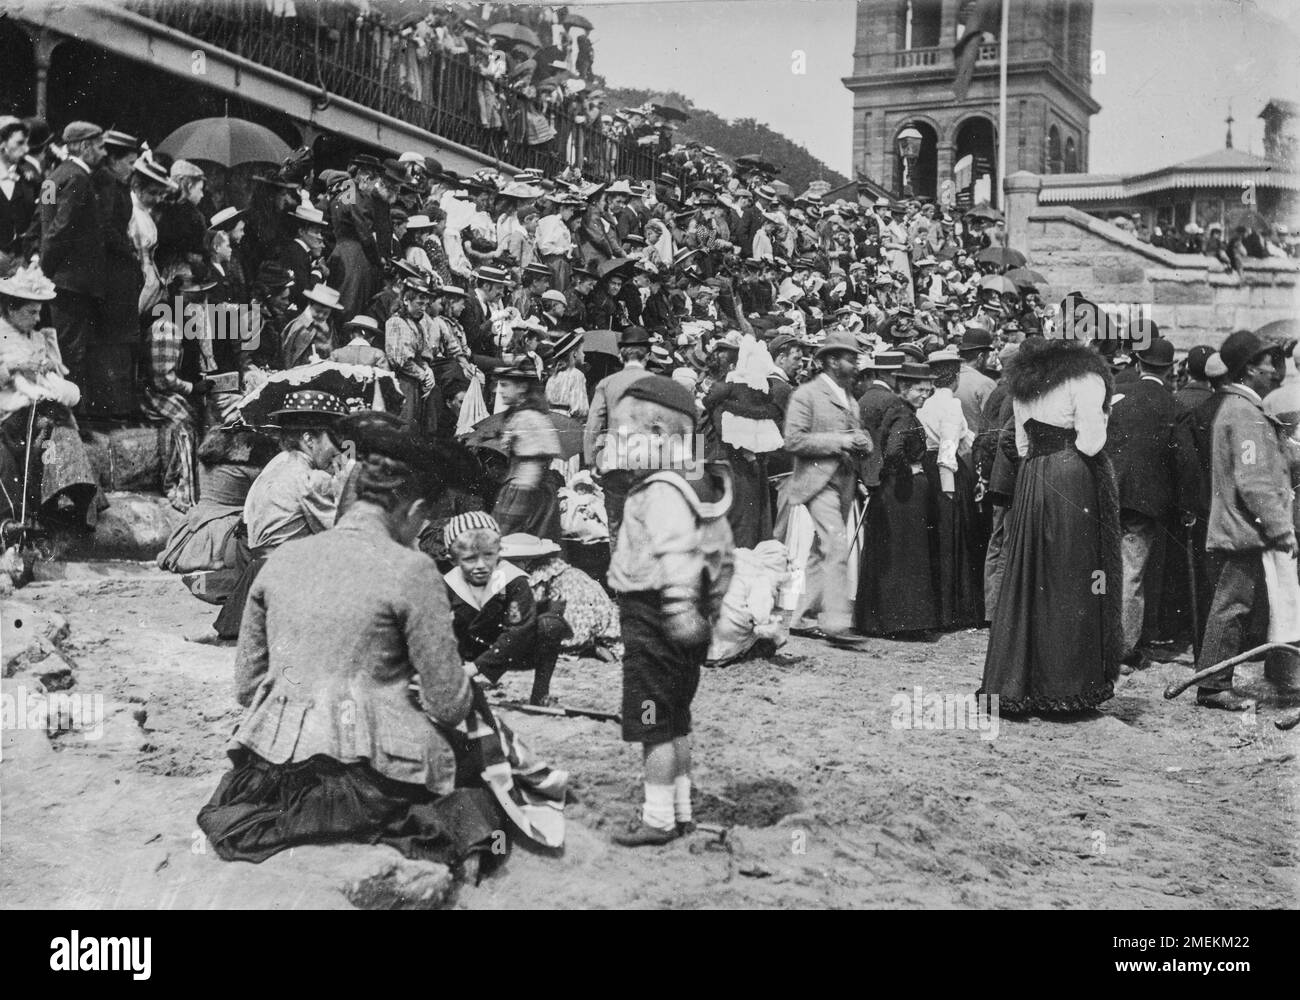 Probablement Scarborough, North Yorkshire, Royaume-Uni. Une foule de vacances édouardiennes sur une plage anglaise en été. Photographie amateur prise vers 1900. Banque D'Images